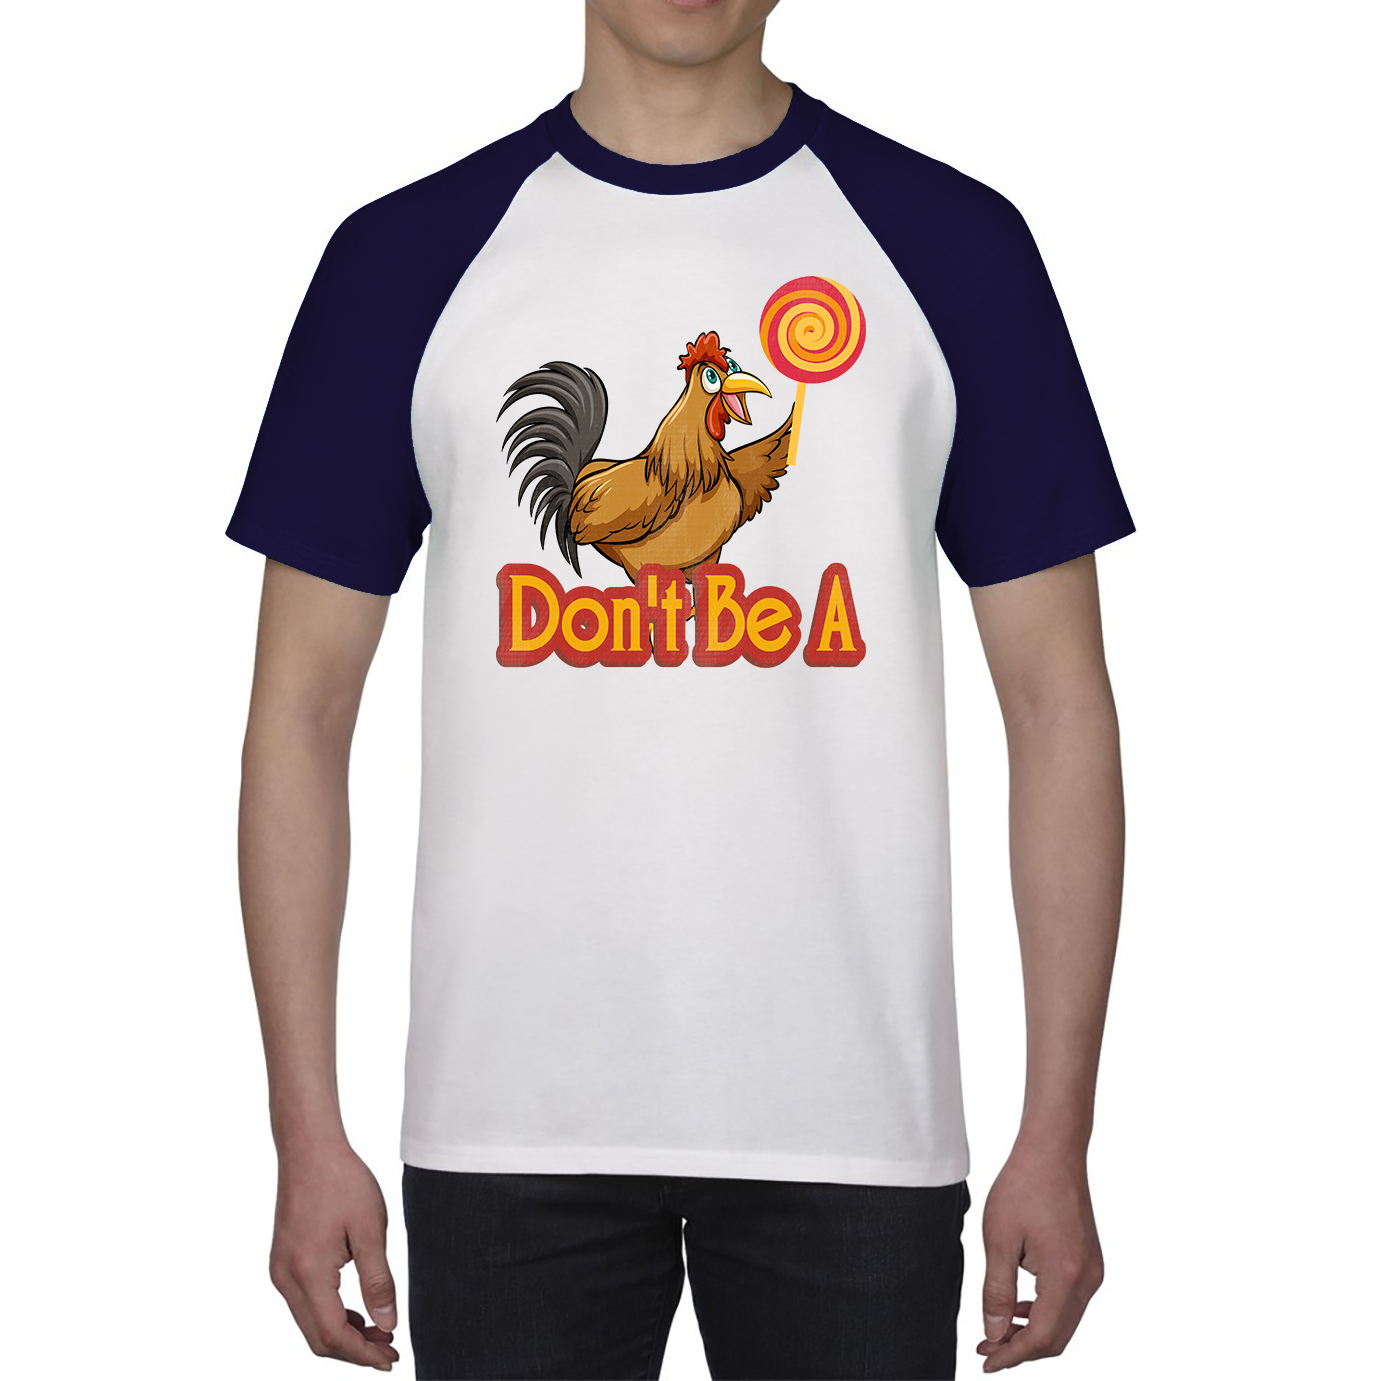 Don't Be A Cock Sucker Rooster Lollipop Candy Shirt Funny Joke Meme Baseball T Shirt